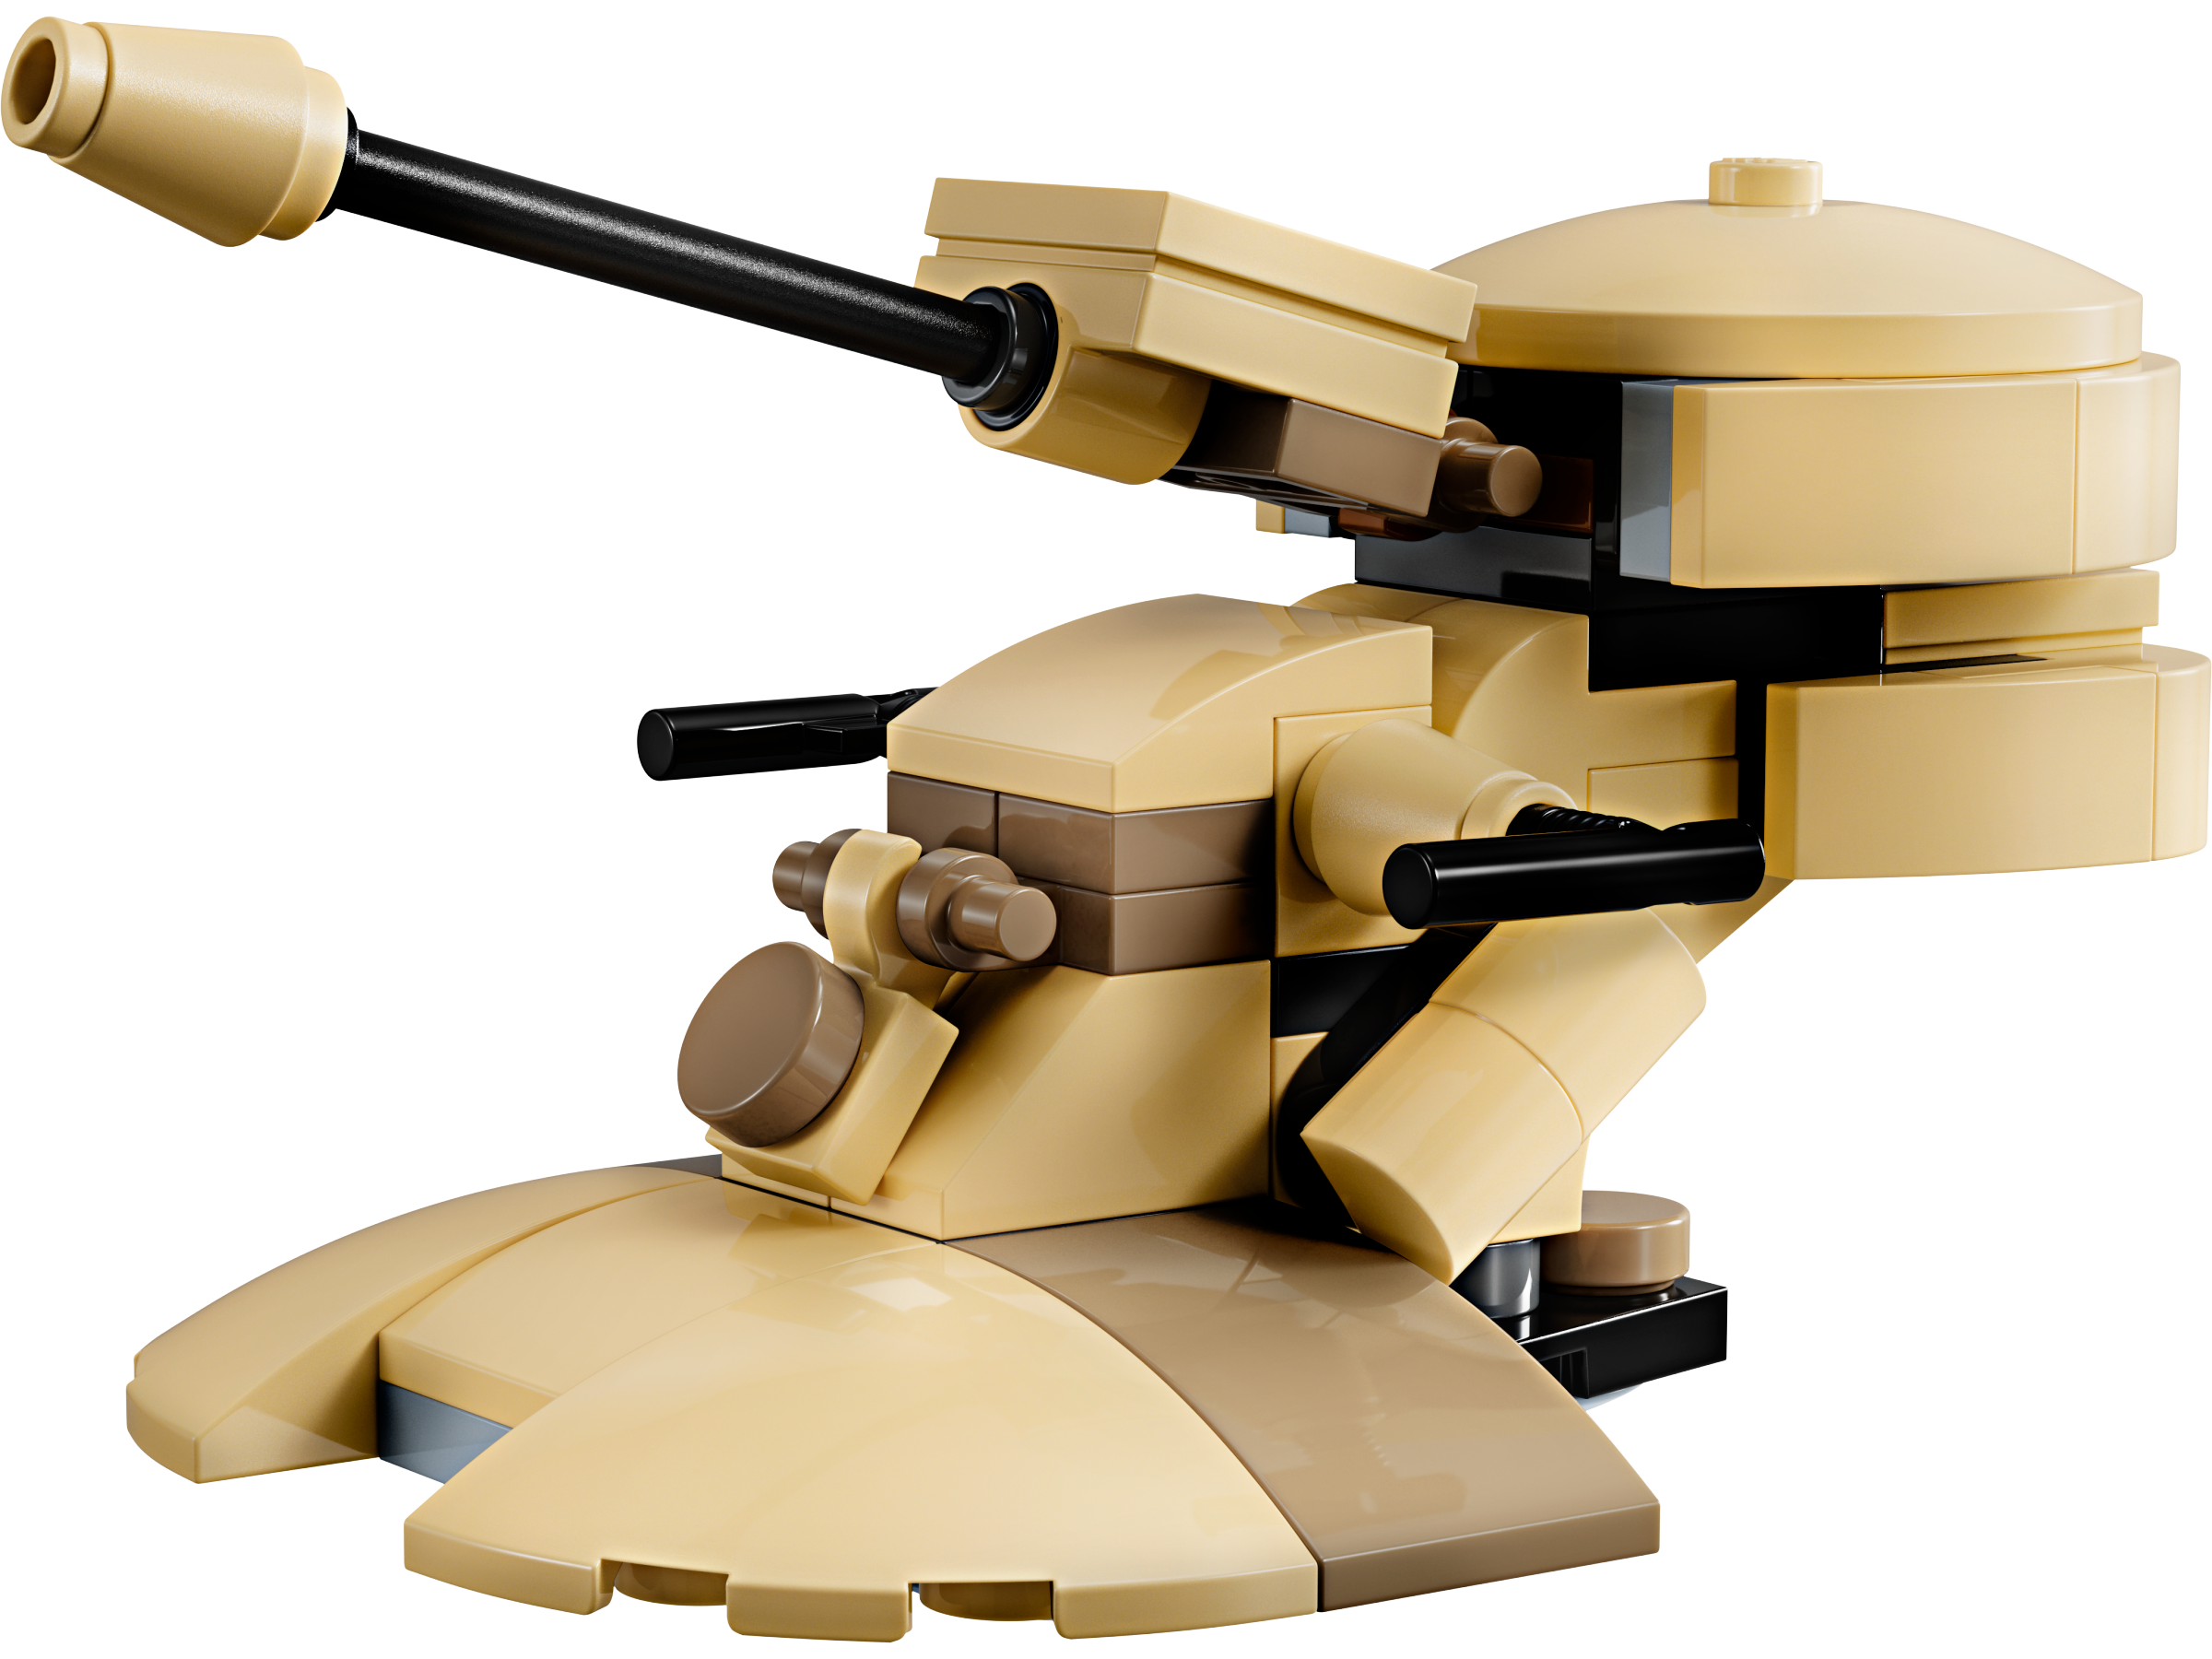 LEGO Star Wars 30680 AAT Polybag